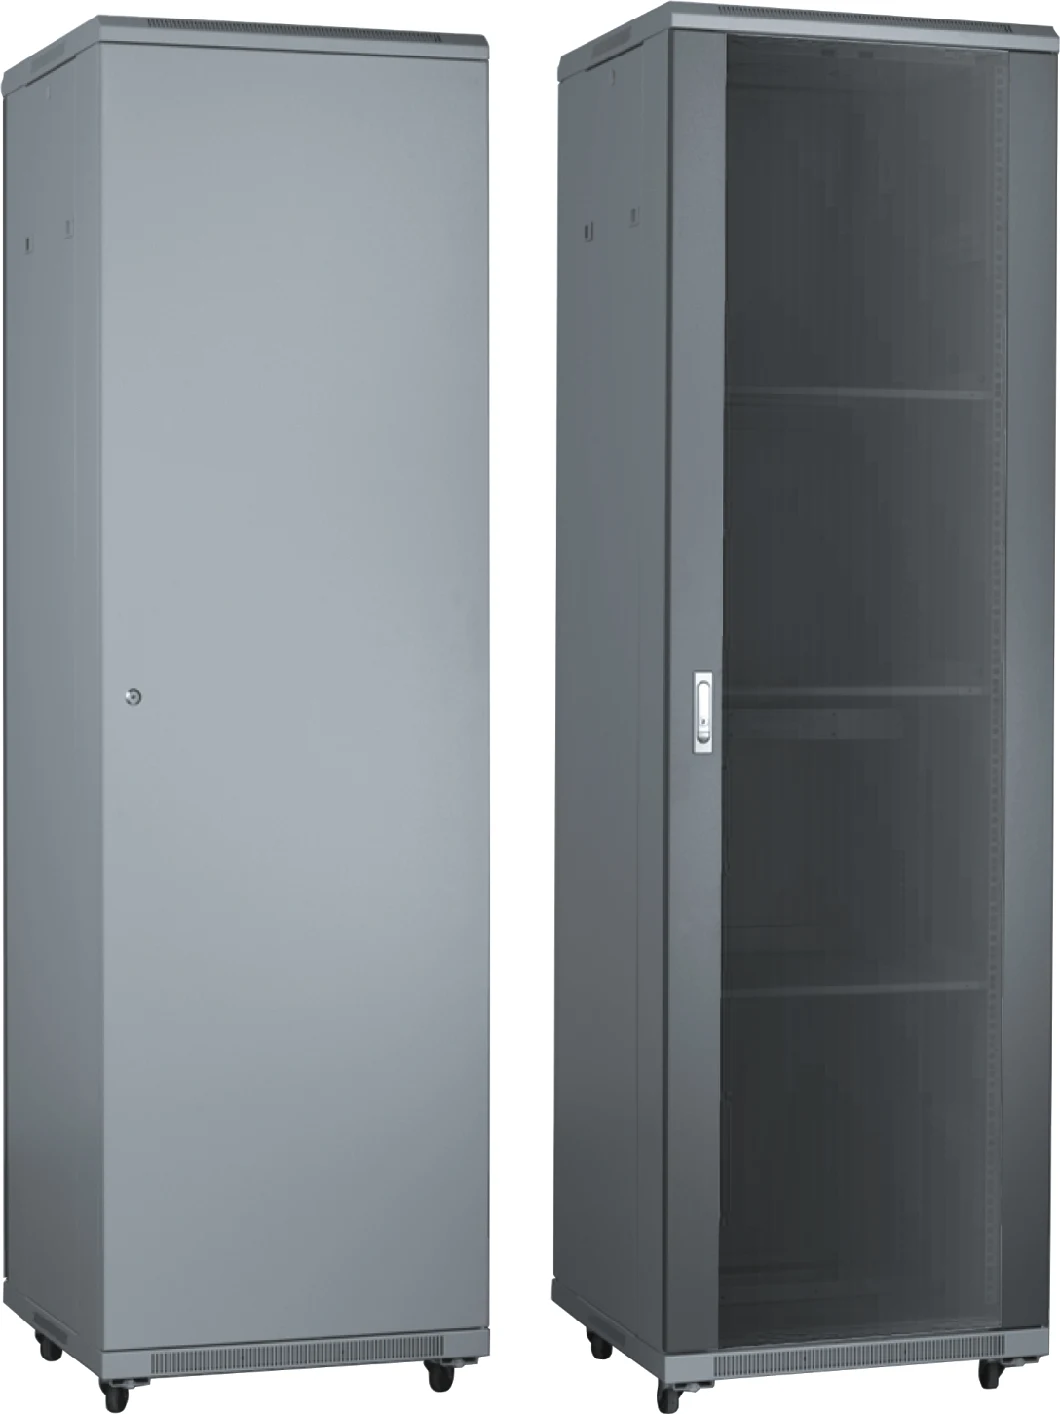 19 Inch Data Center Server Rack 42u Floor Standing Glass Door, Fllor Cabinet, Server Cabinet, Wall Mount Cabinet, Network Cabinet